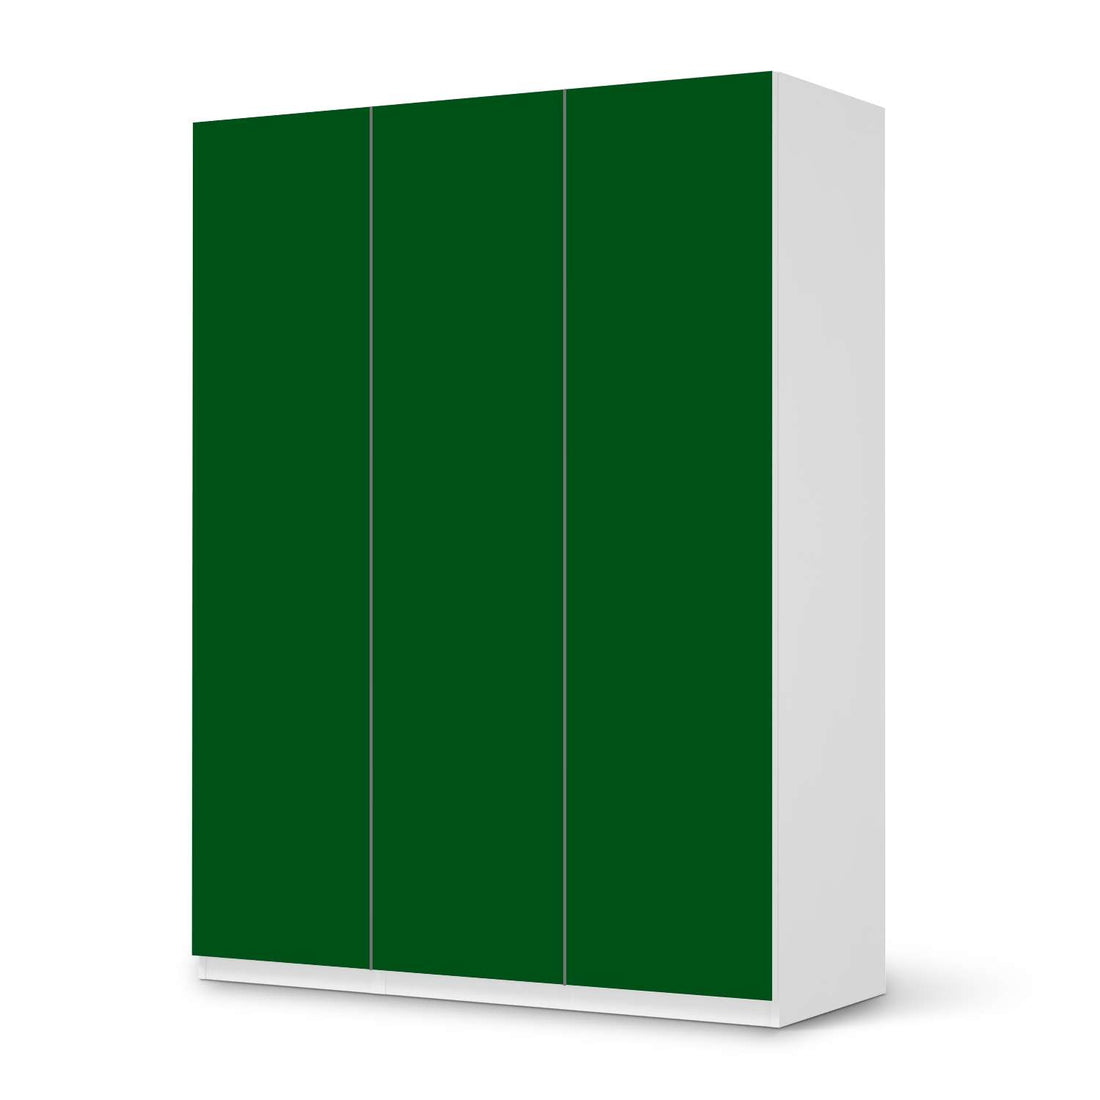 Folie für Möbel Grün Dark - IKEA Pax Schrank 201 cm Höhe - 3 Türen - weiss